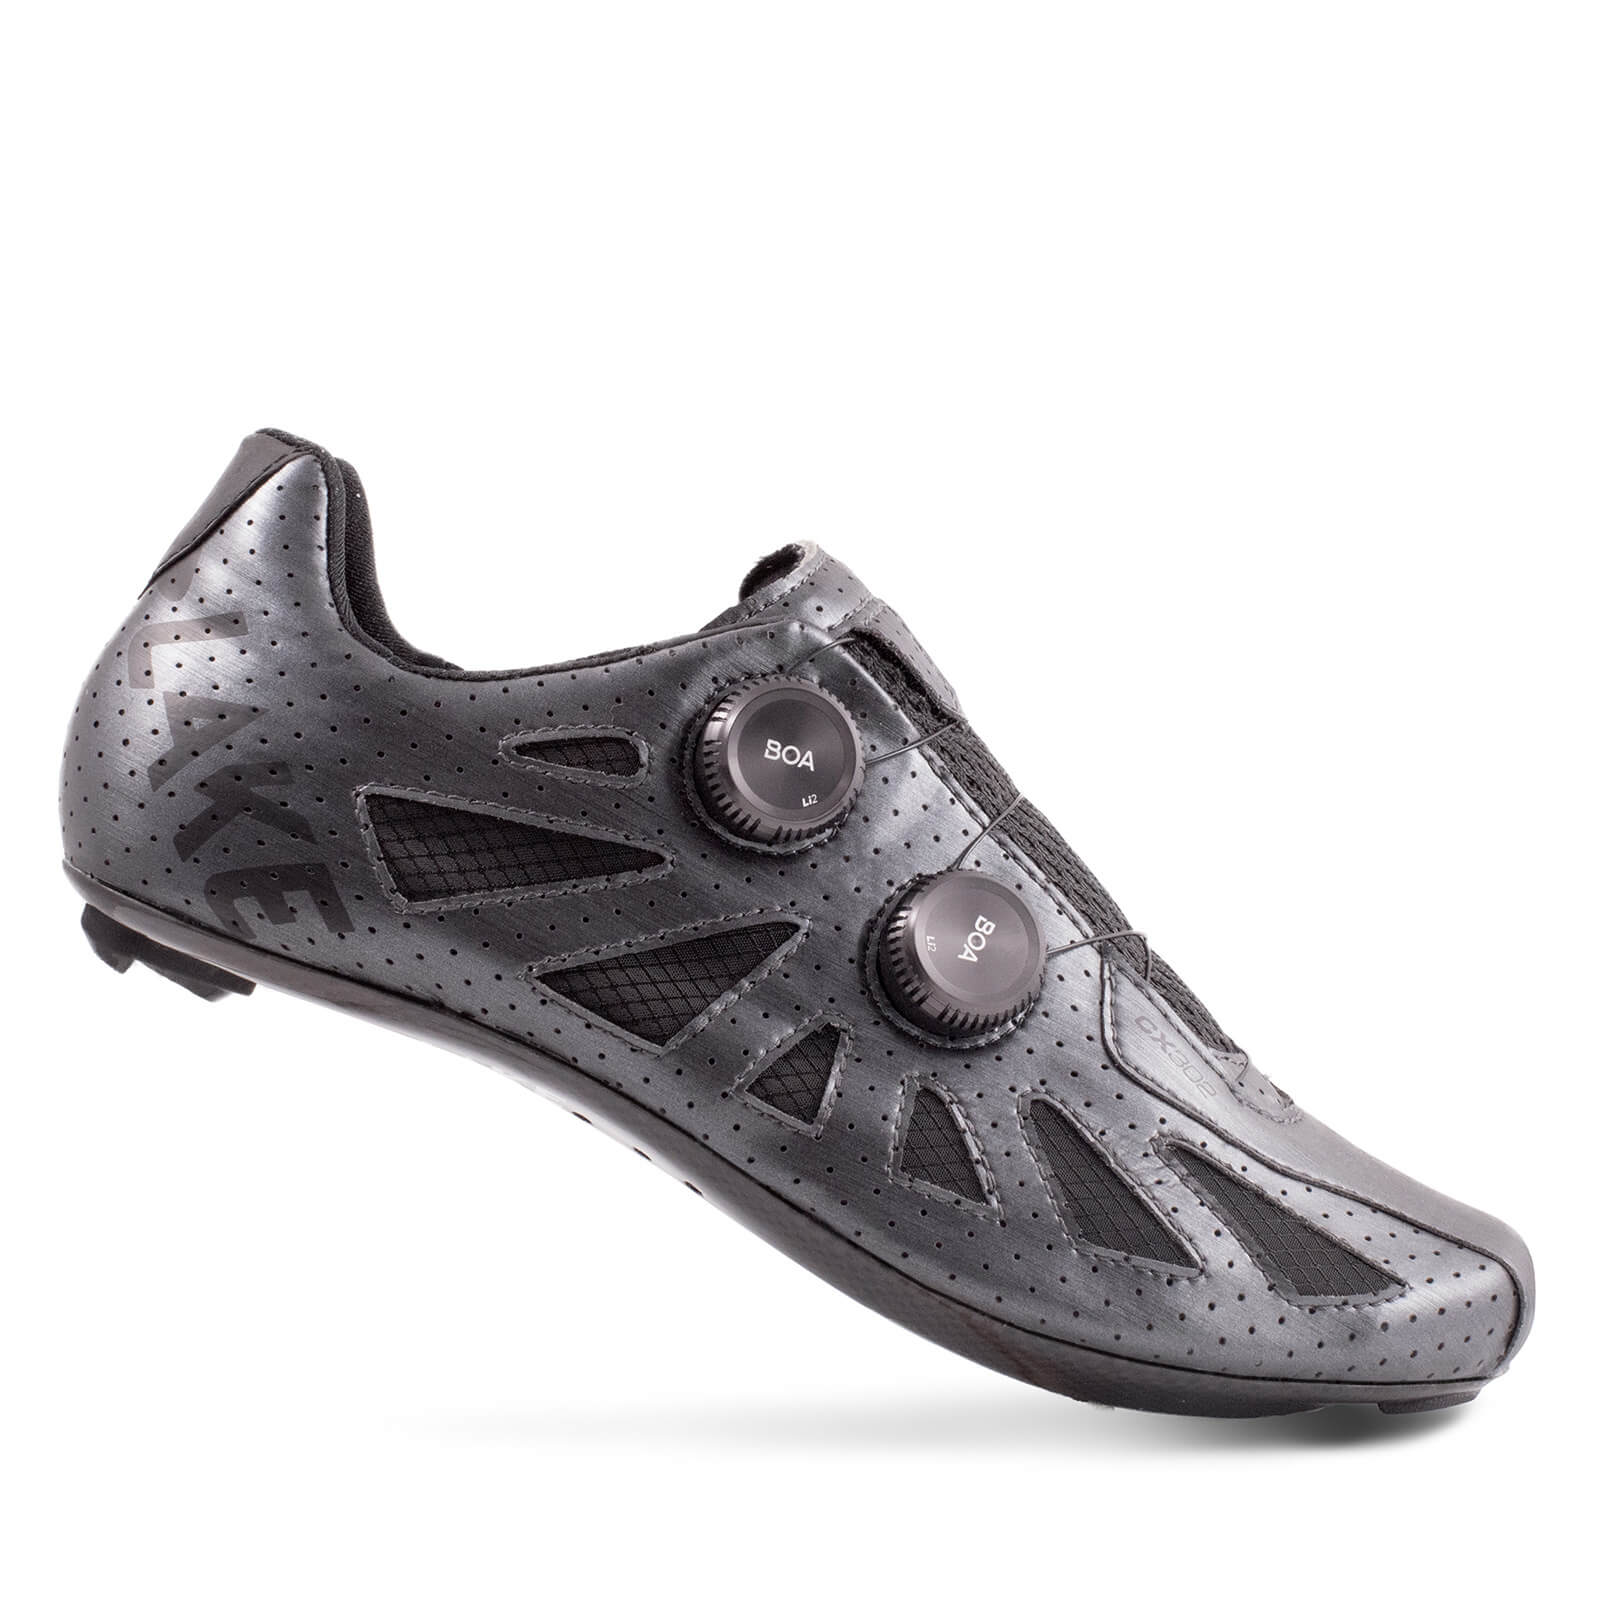 Lake CX302 SE Road Shoes - EU43 - Metal